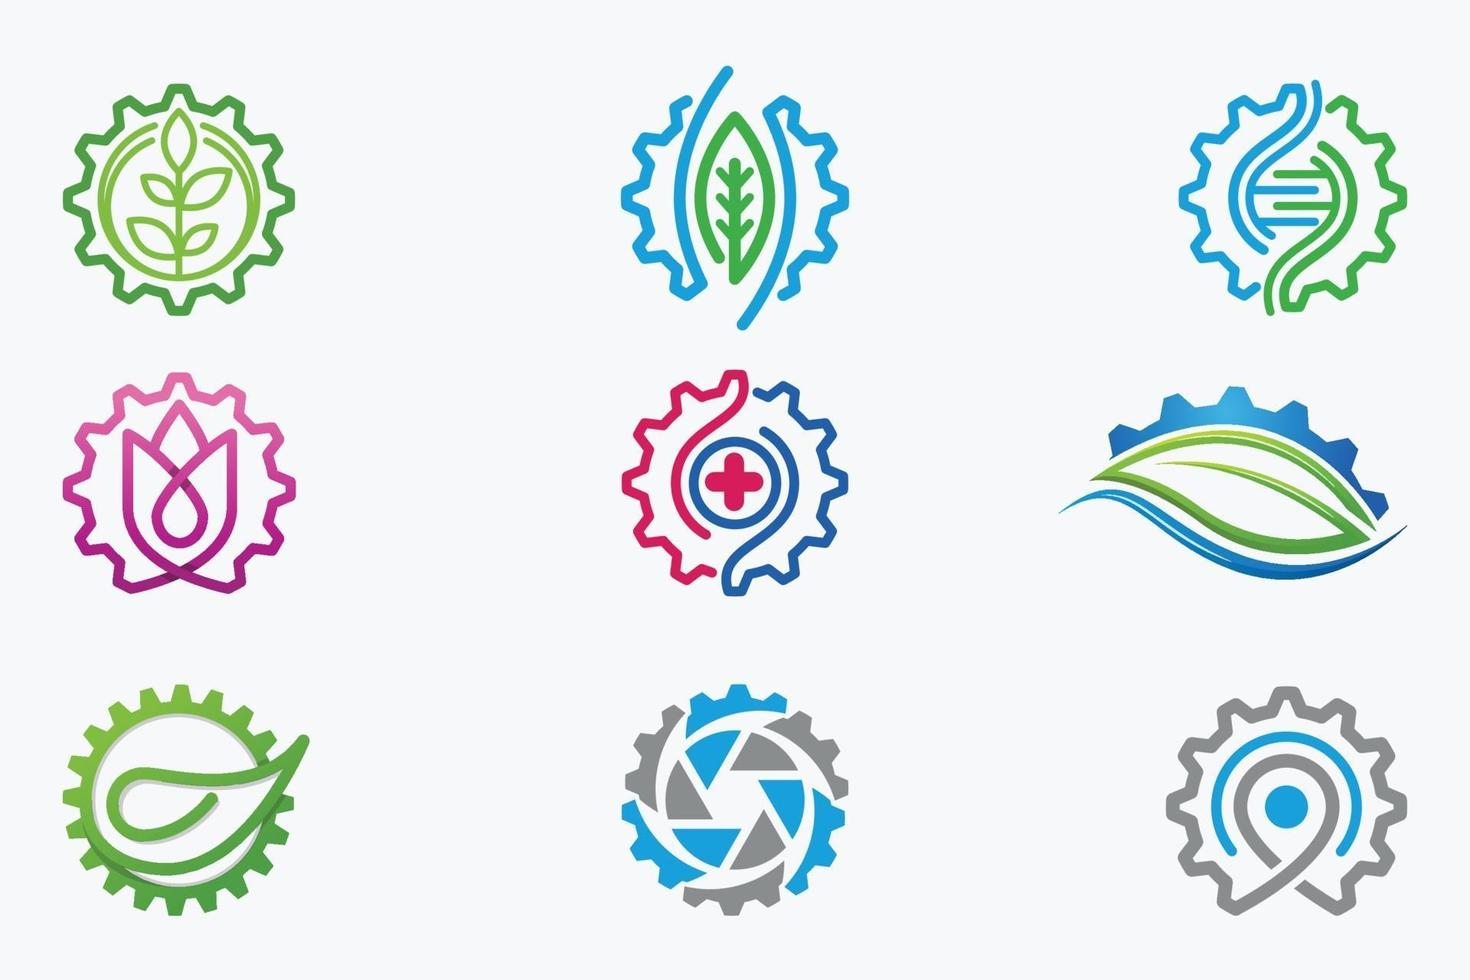 Gear Logos vector design templates